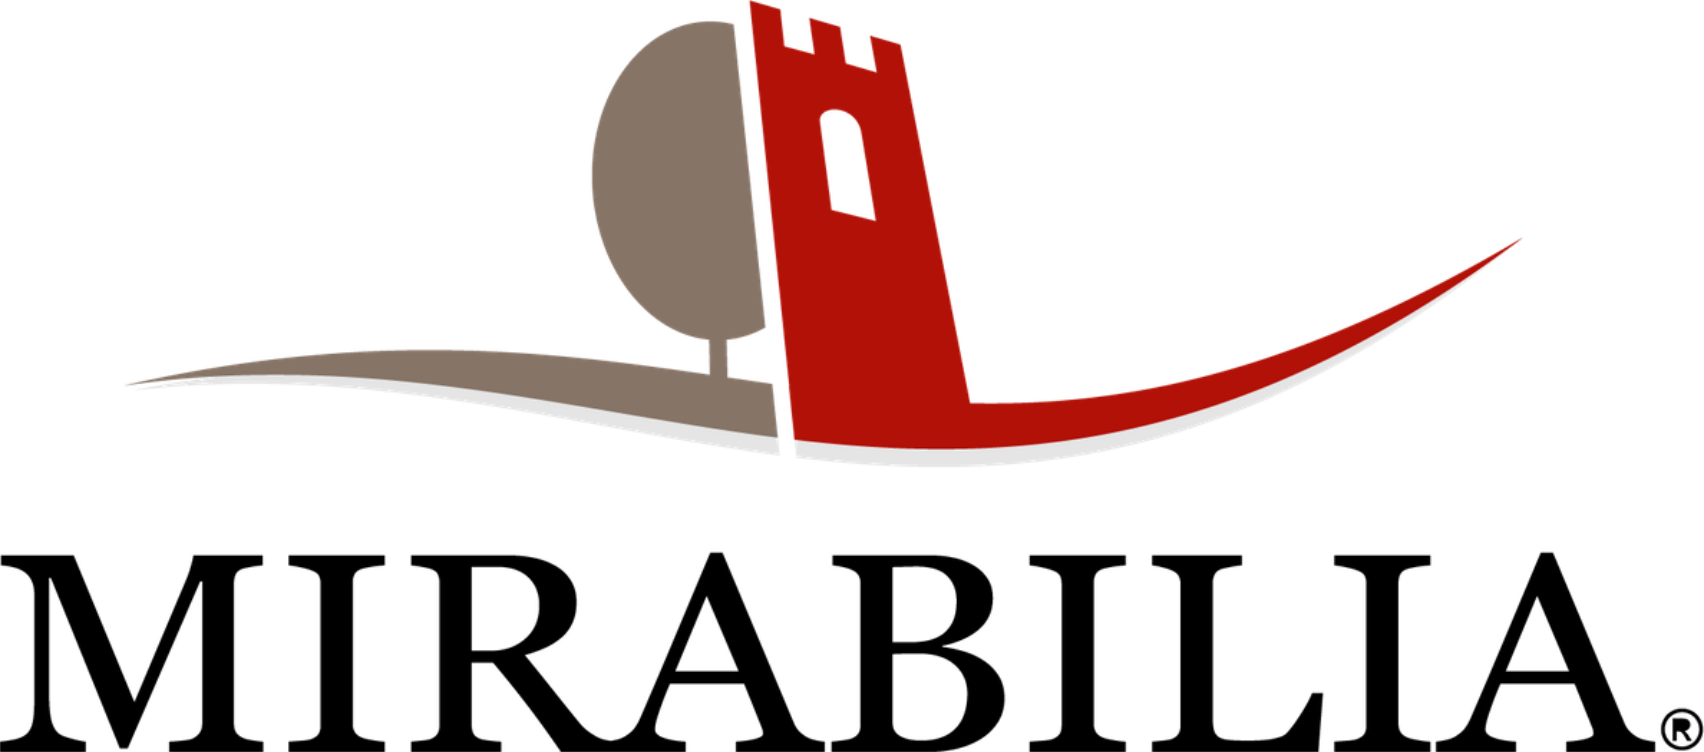 Logo Mirabilia